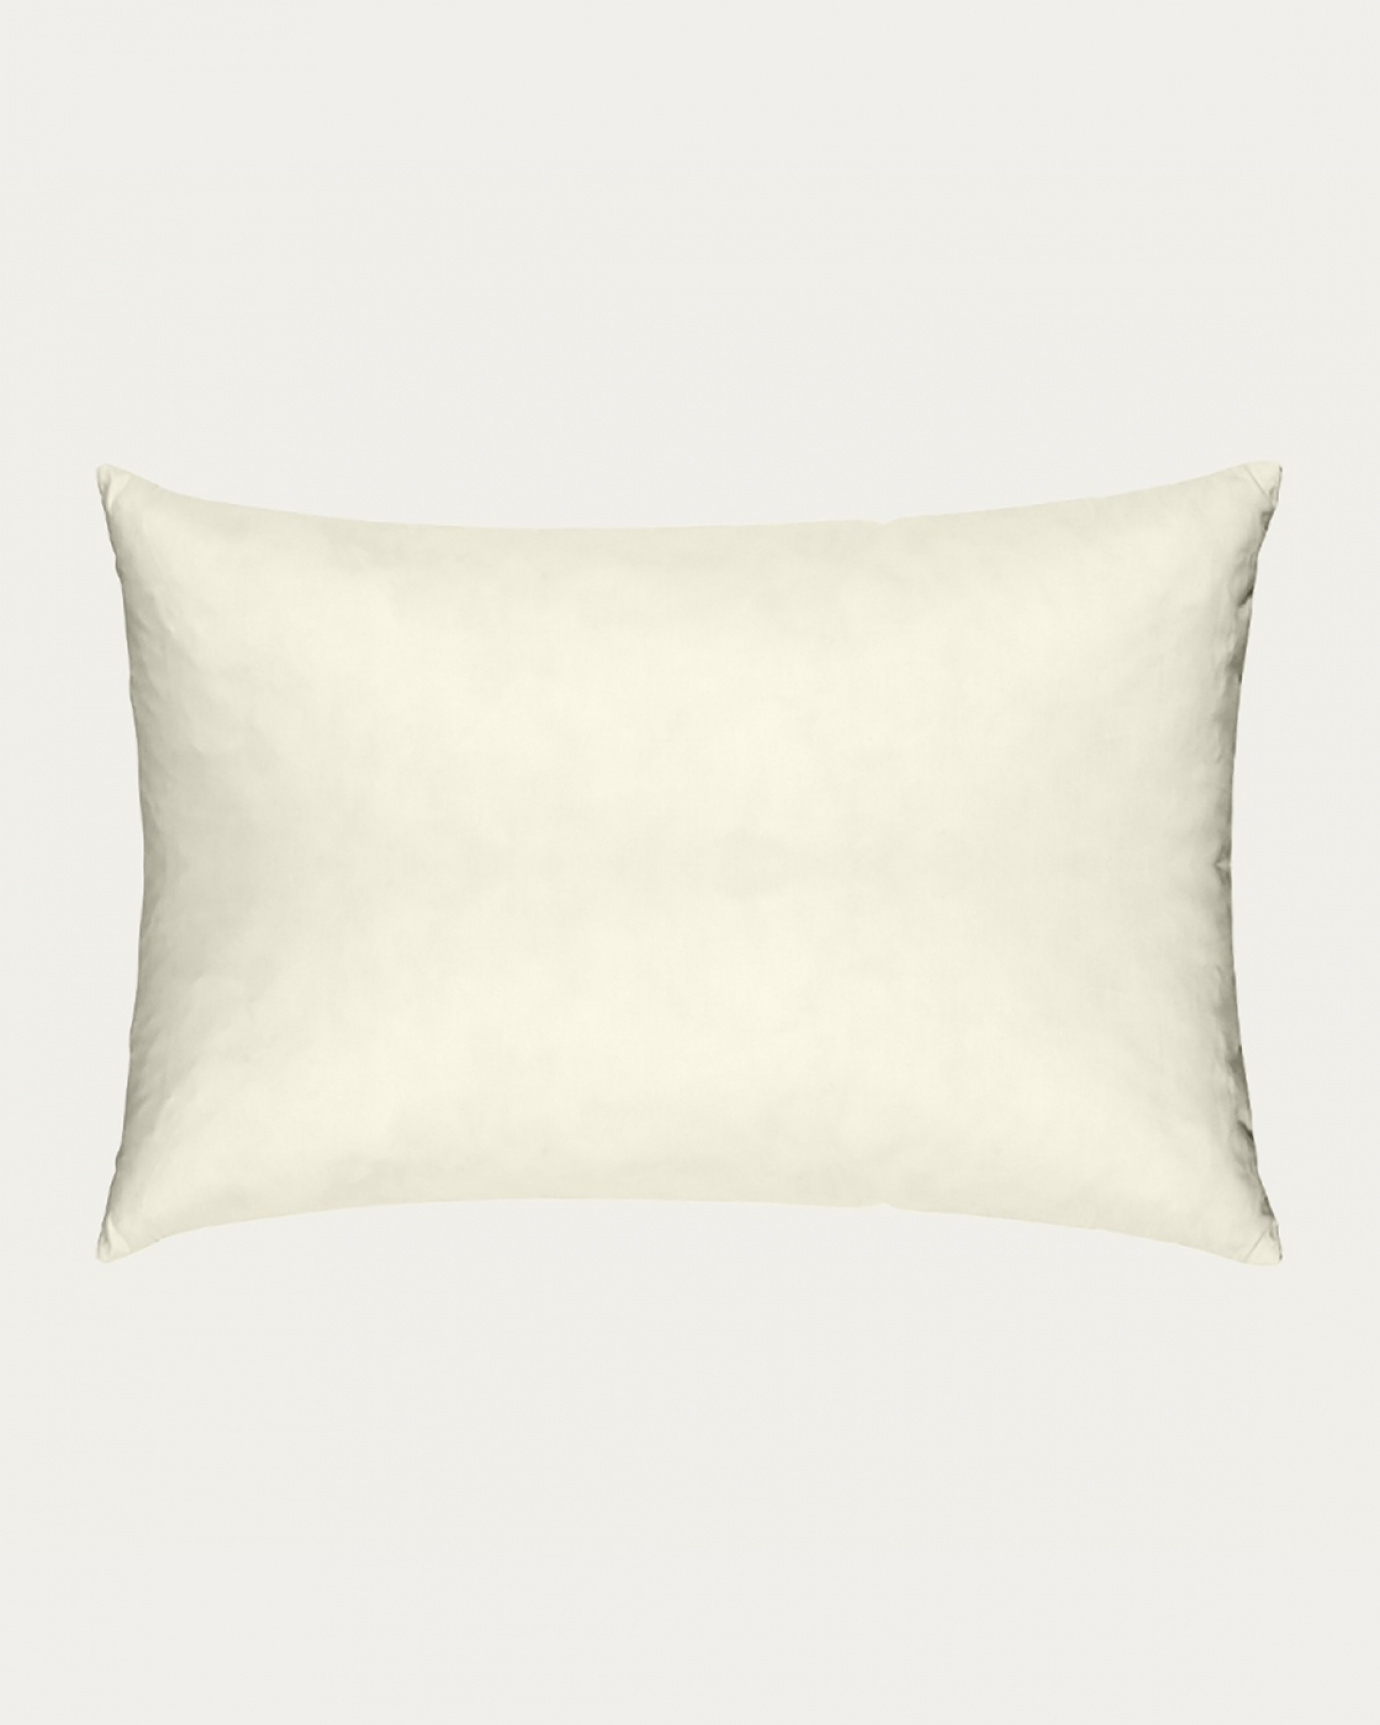 Immagine prodotto beige cotone FEATHER cuscini interni in cotone con imbottitura in piuma di LINUM DESIGN. Dimensione 40x60 cm.